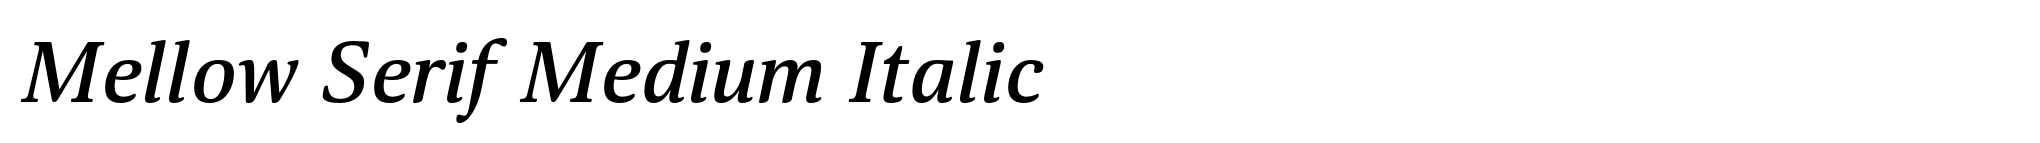 Mellow Serif Medium Italic image